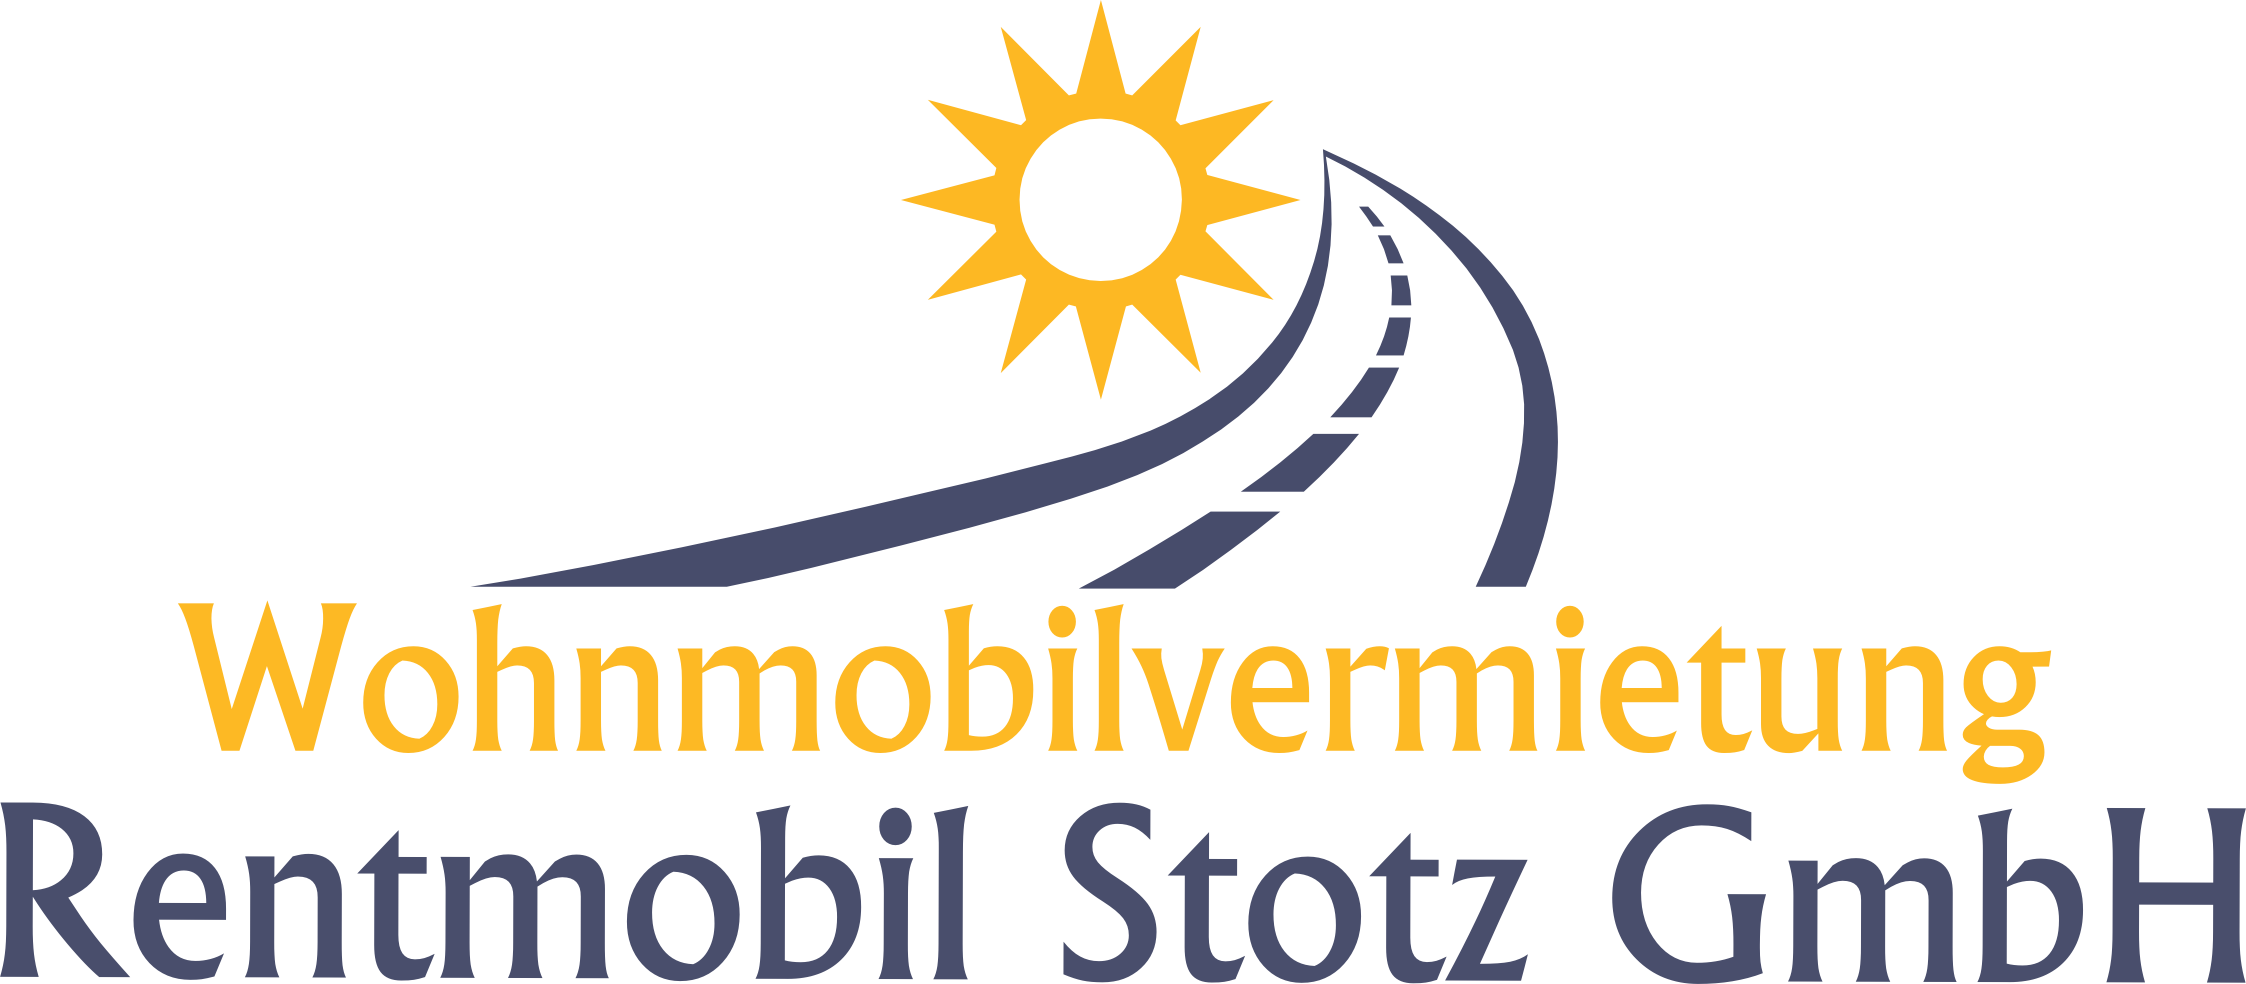 Rentmobil Stotz GmbH
Ihr Partner für Wohnmobilmiete